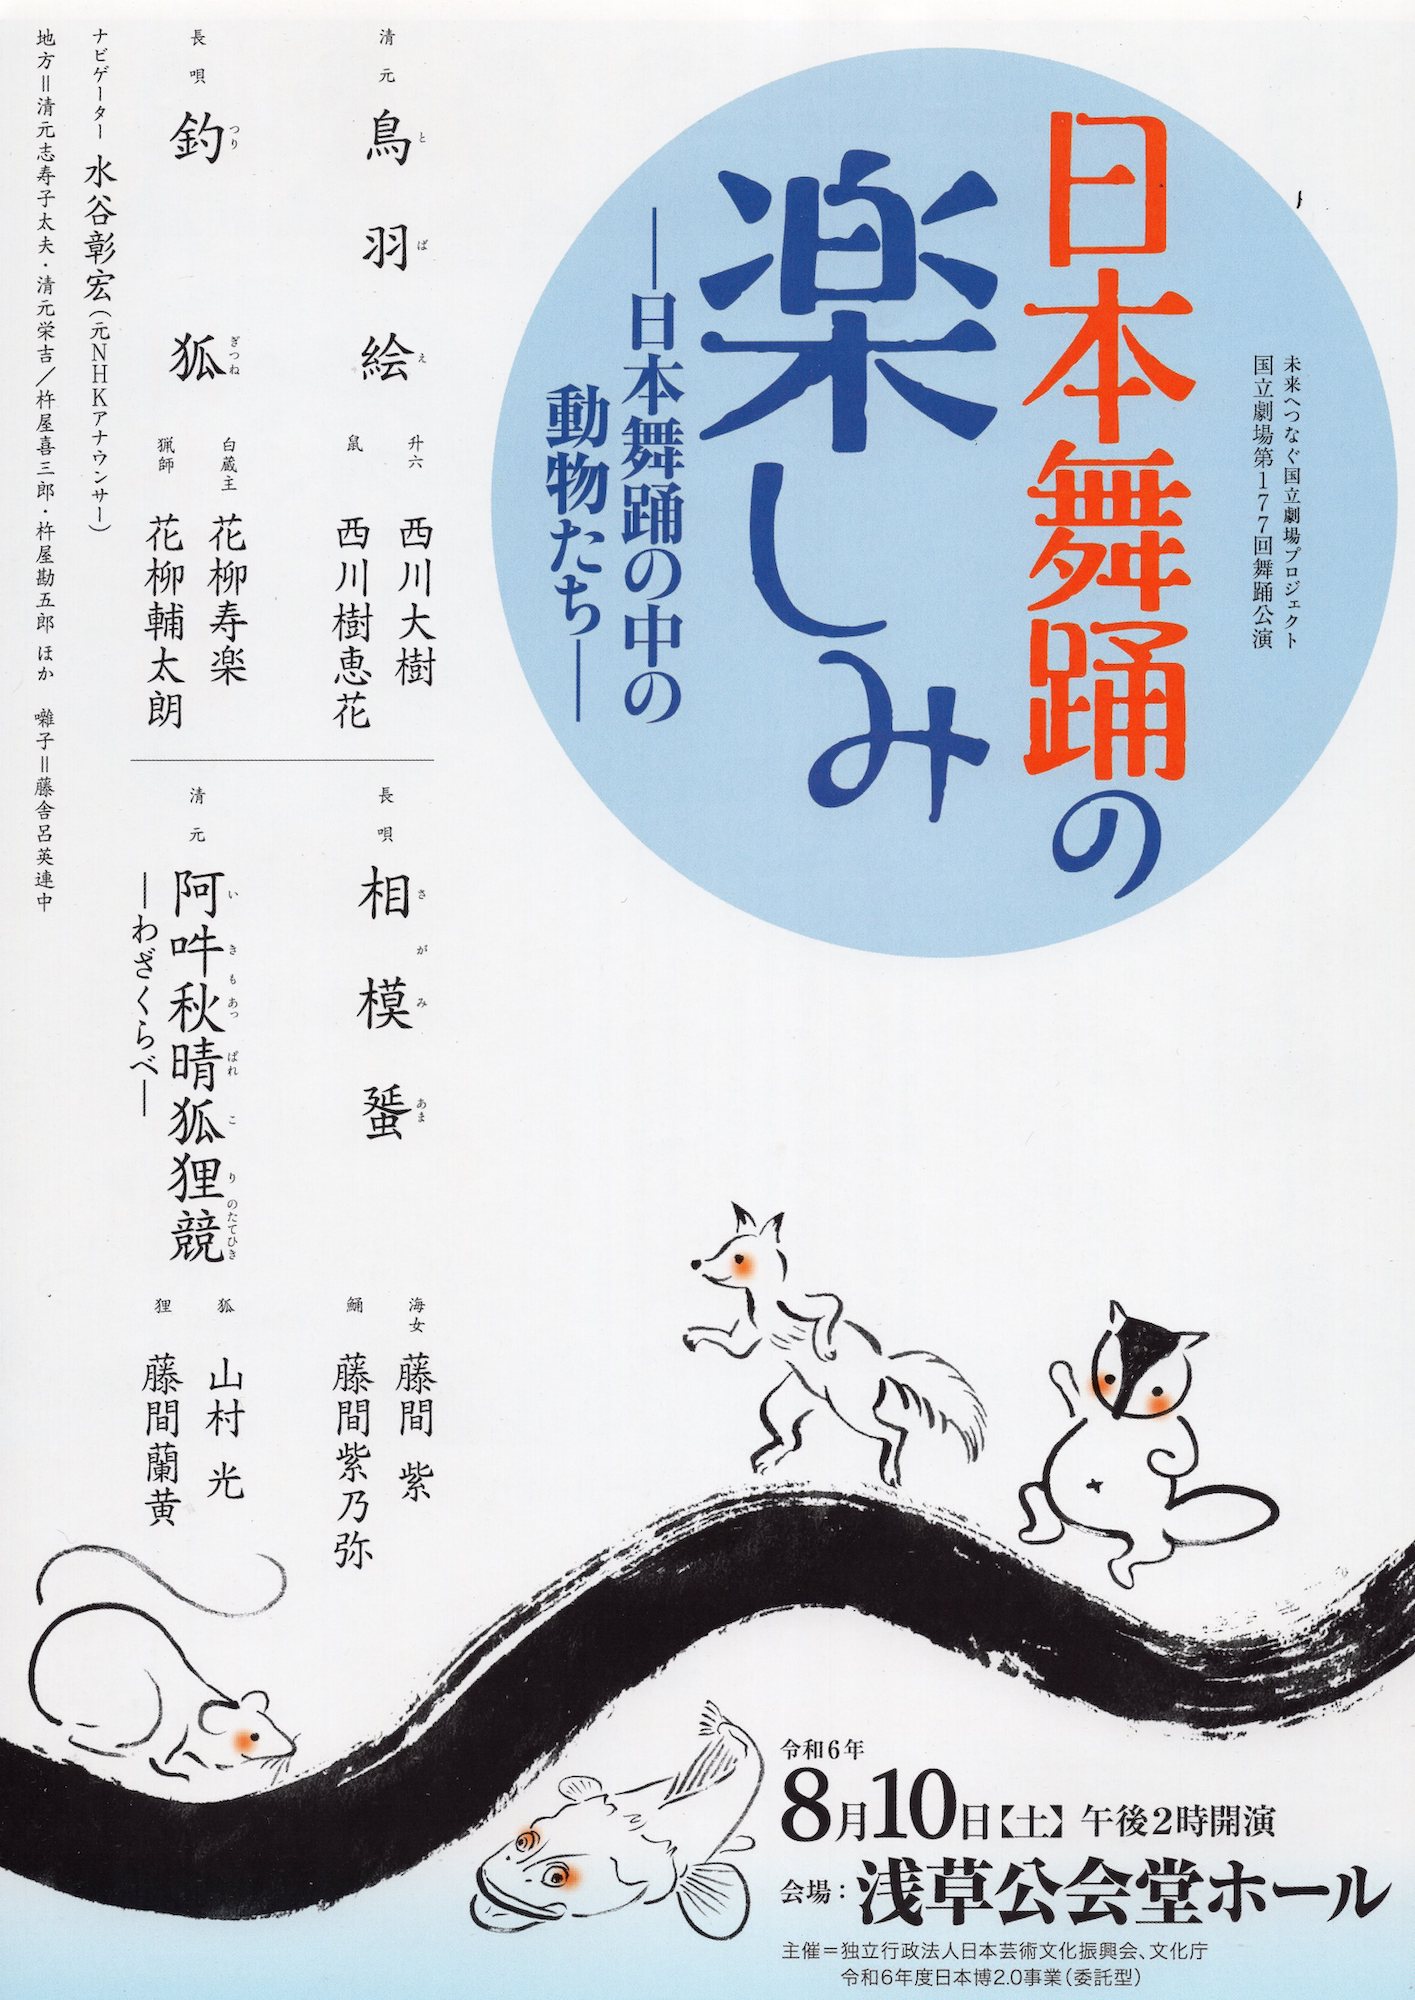 国立劇場舞踊公演「日本舞踊の楽しみ」日本舞踊の中の動物たちポスター